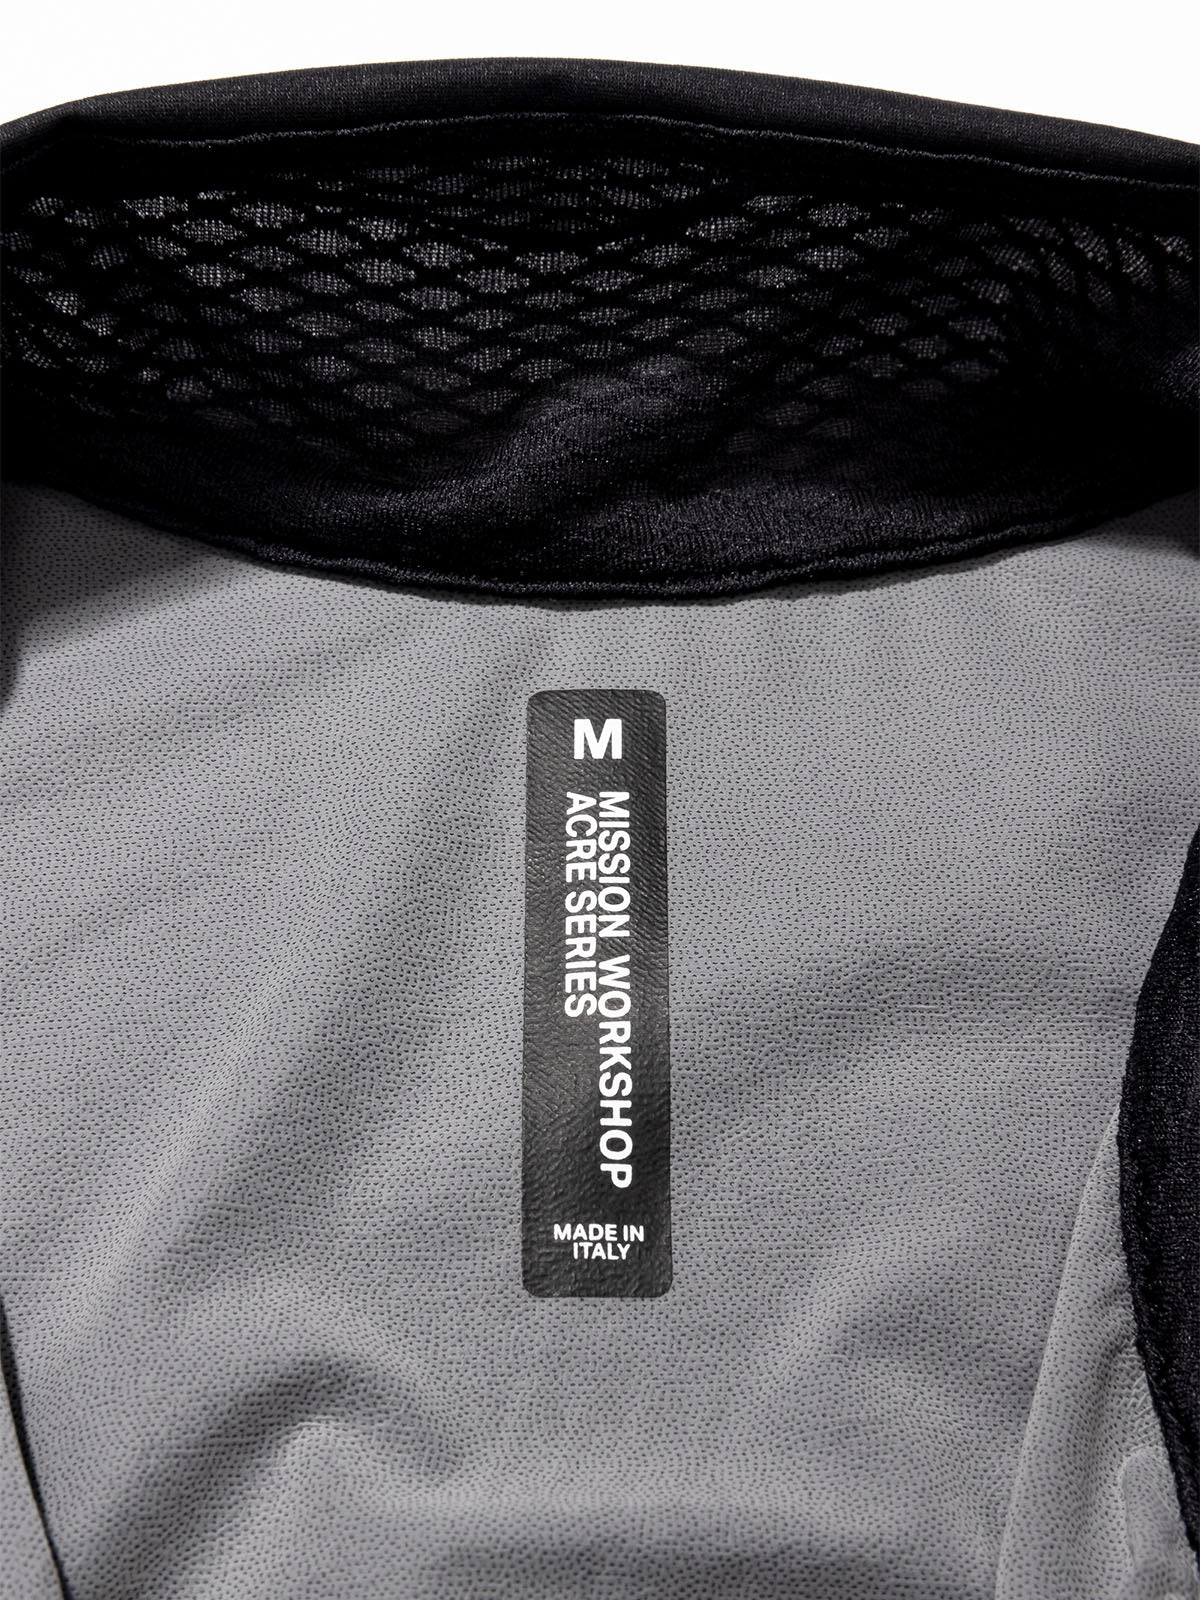 Altosphere Jacket van Mission Workshop - Weerbestendige tassen & technische kleding - San Francisco & Los Angeles - Gemaakt om te doorstaan - Voor altijd gegarandeerd